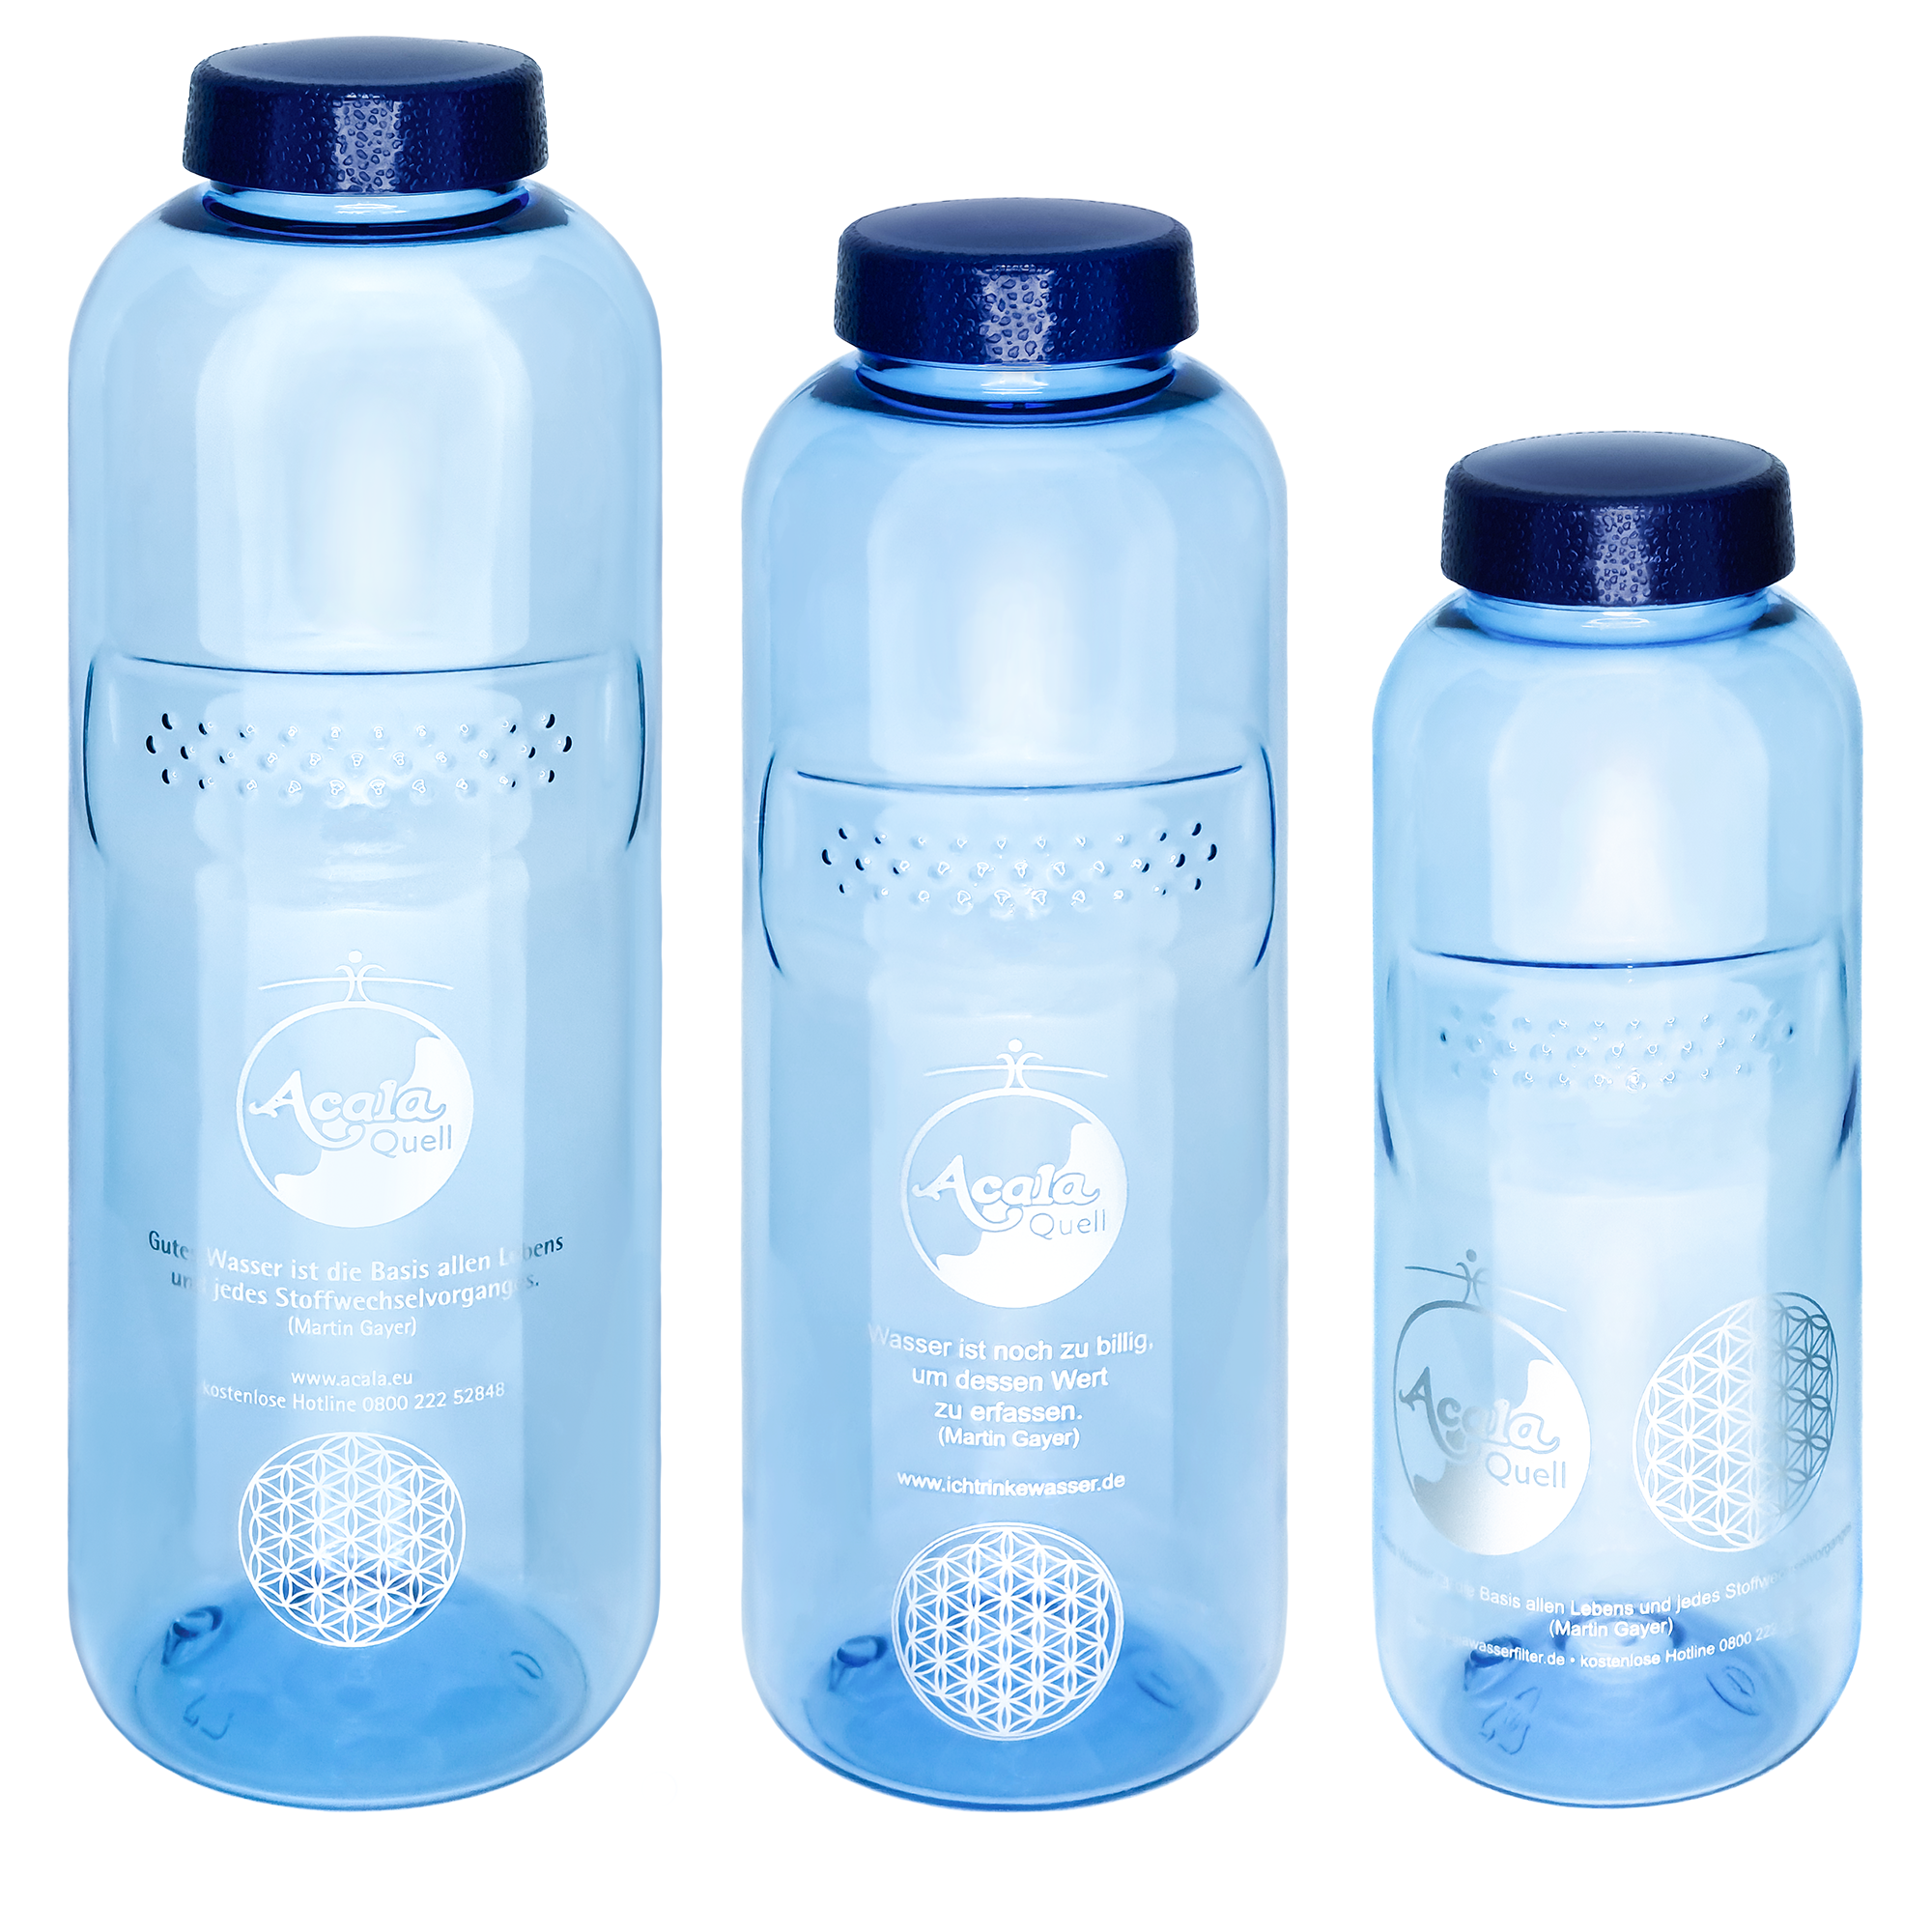 Zu sehen sind 3 blaue Tritan Trinkflaschen verschiedener Größe mit dunkelblauem Schraubdeckel. Man sieht das Optimal Set Grip bestehend aus einer Flasche 1L, einer Flasche 0,75L und einer Flasche 0,5L. 